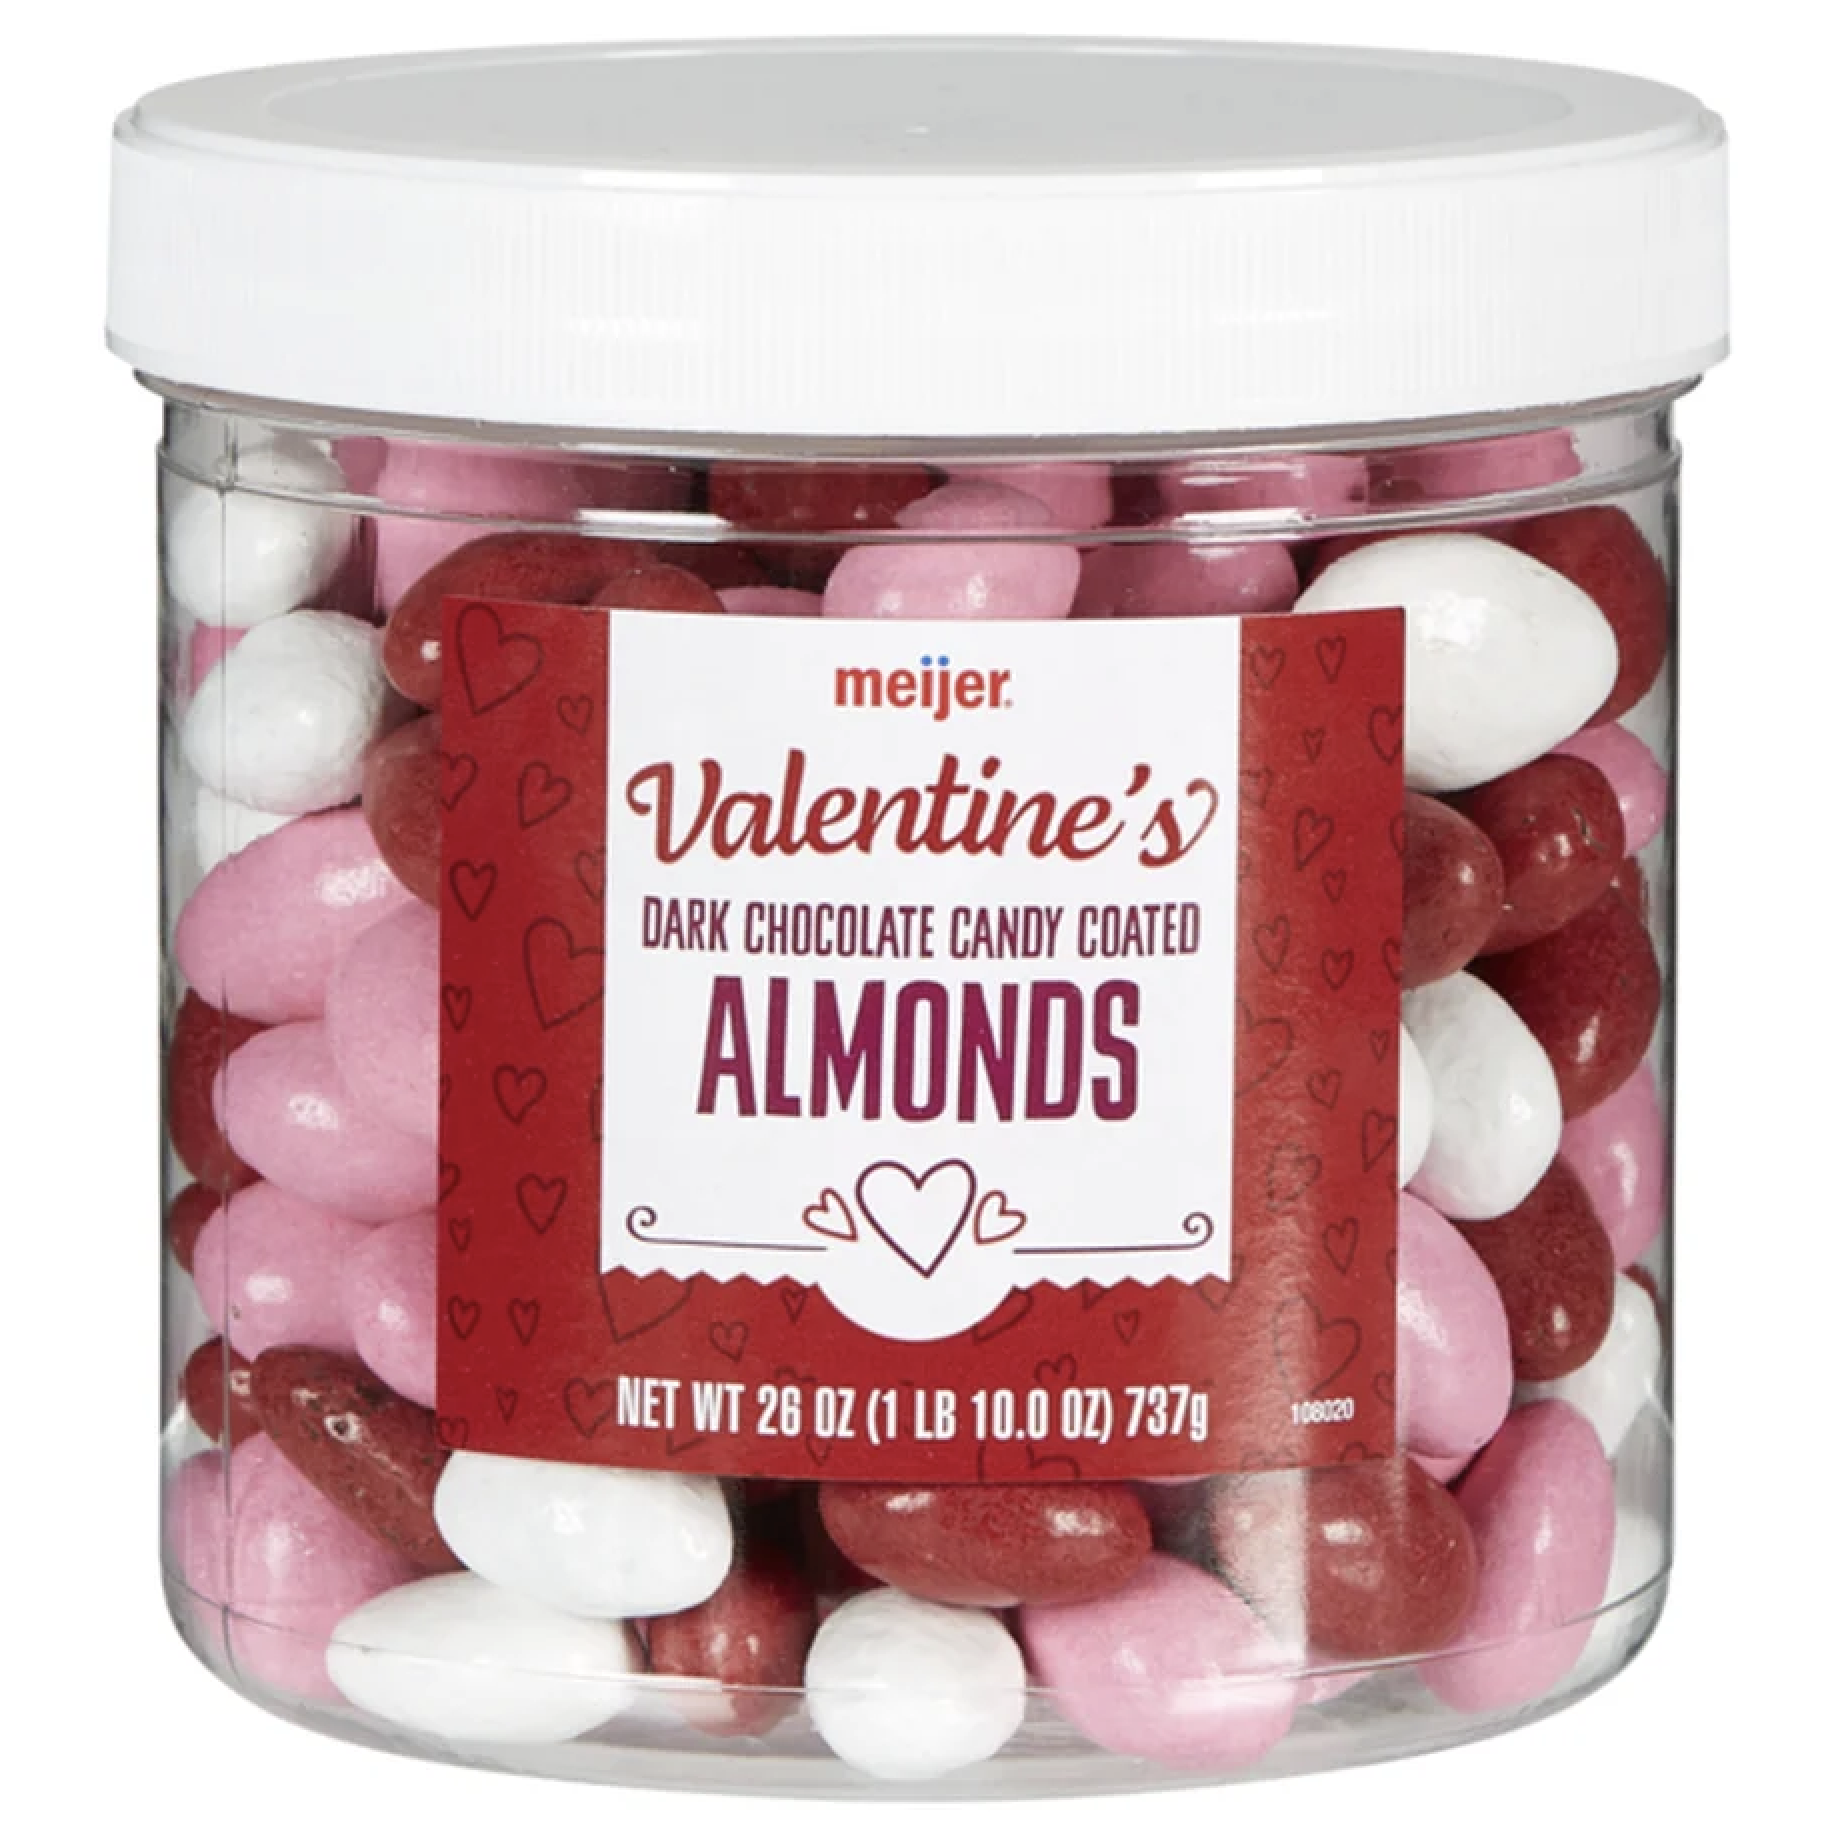 Valentine's Day almond label